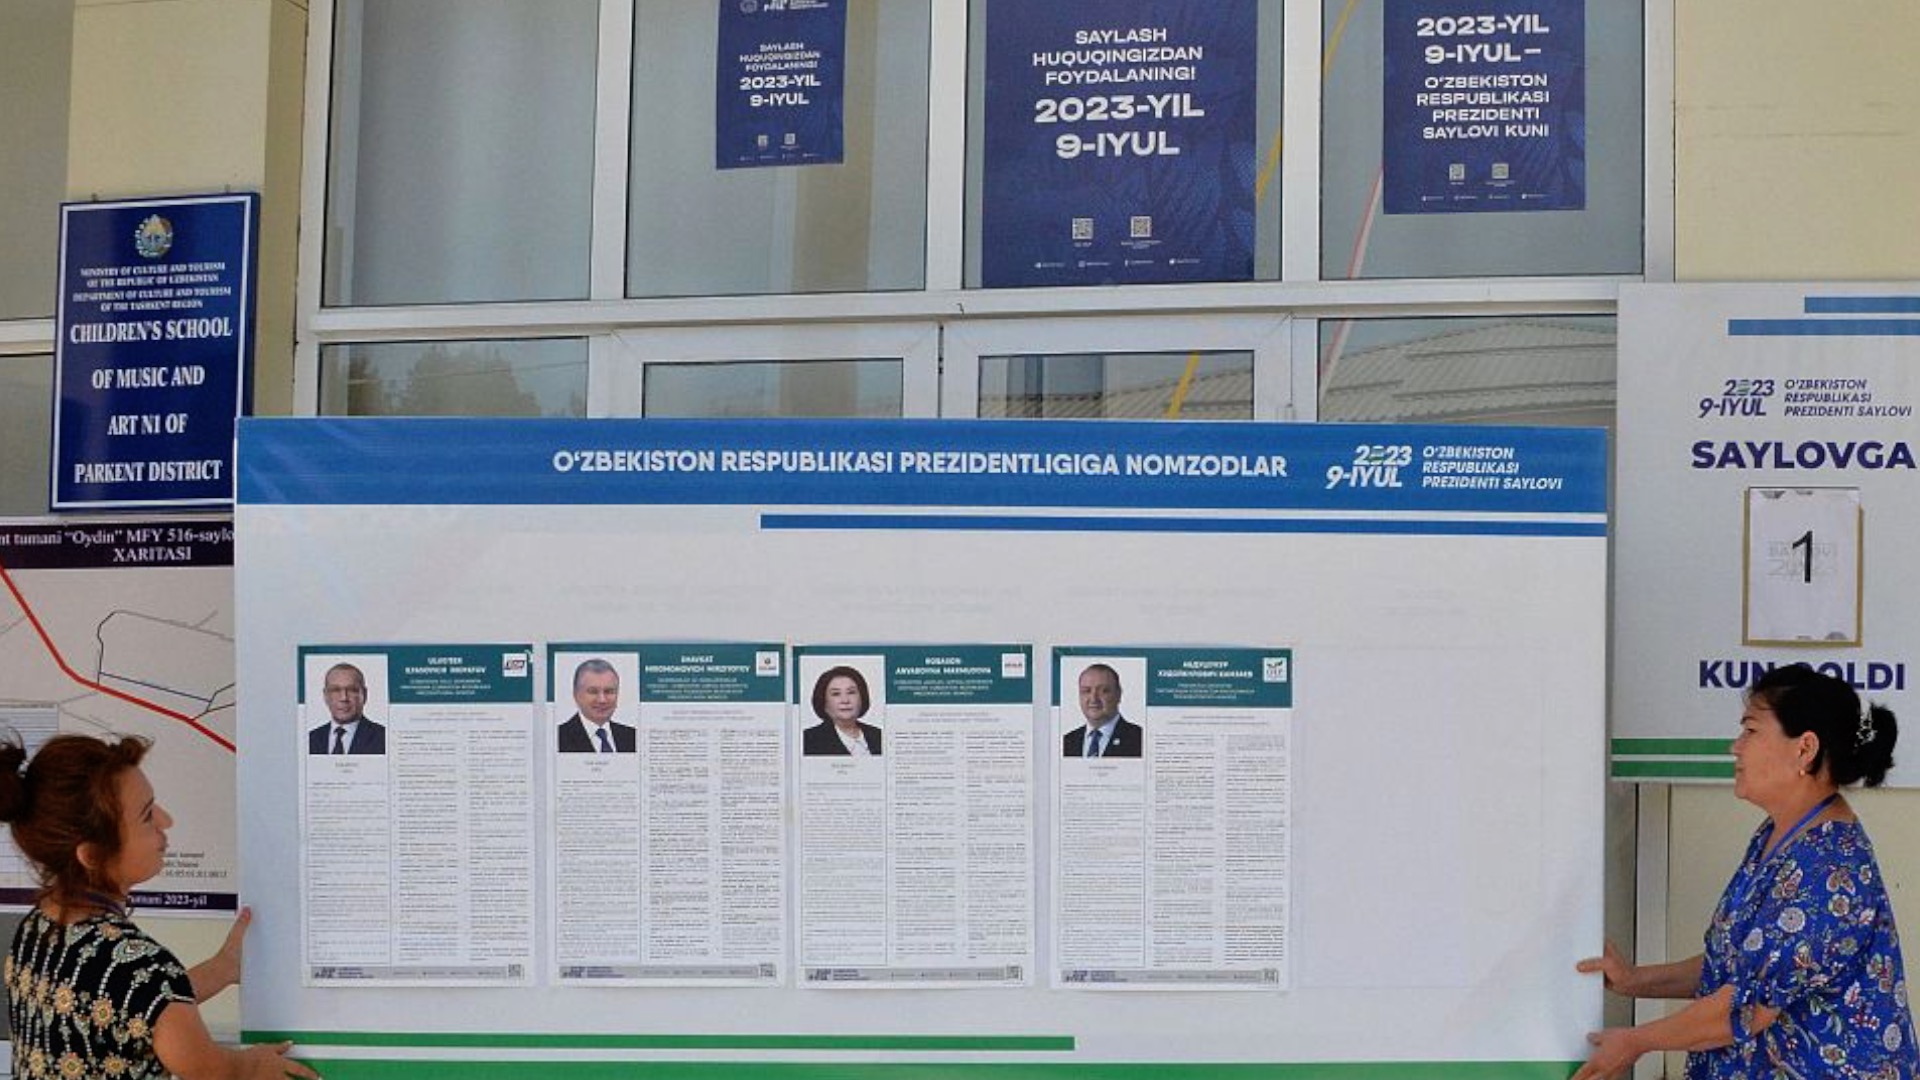 أوزبكستان .. توقعات بفوز سهل للرئيس ميرزيوييف في انتخابات الرئاسة